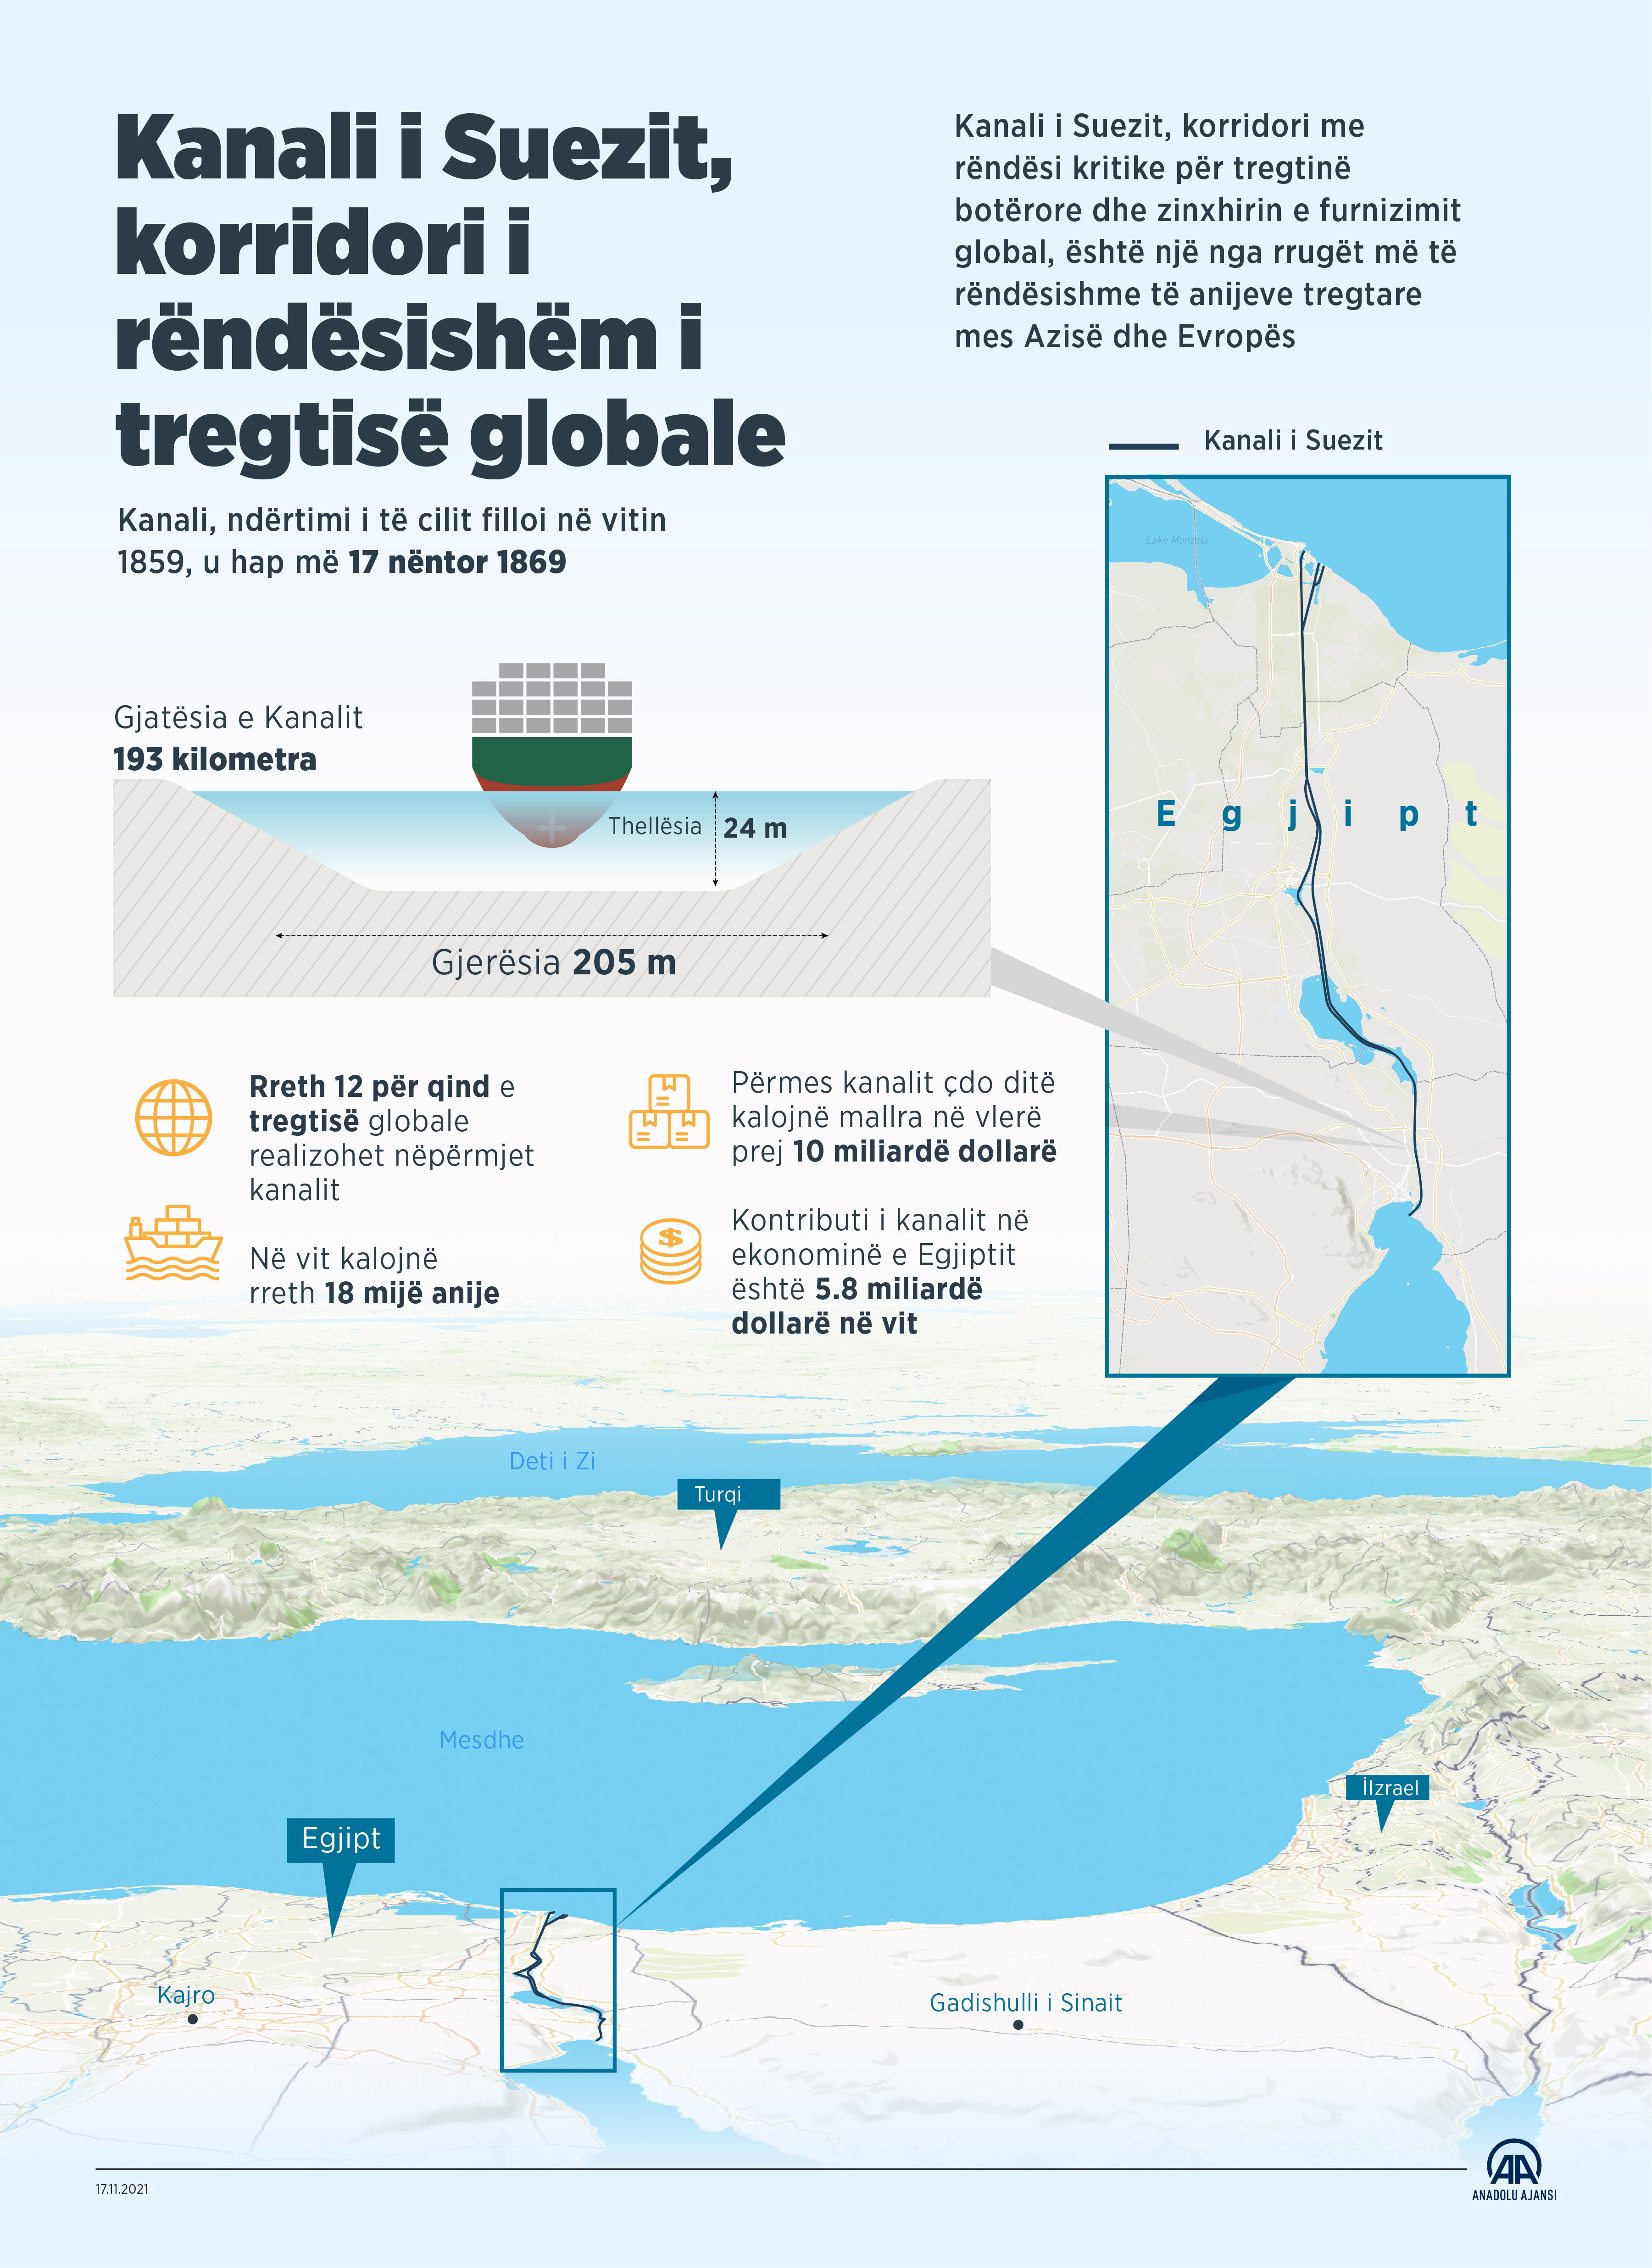 12 për qind e tregtisë globale kalon përmes Kanalit të Suezit